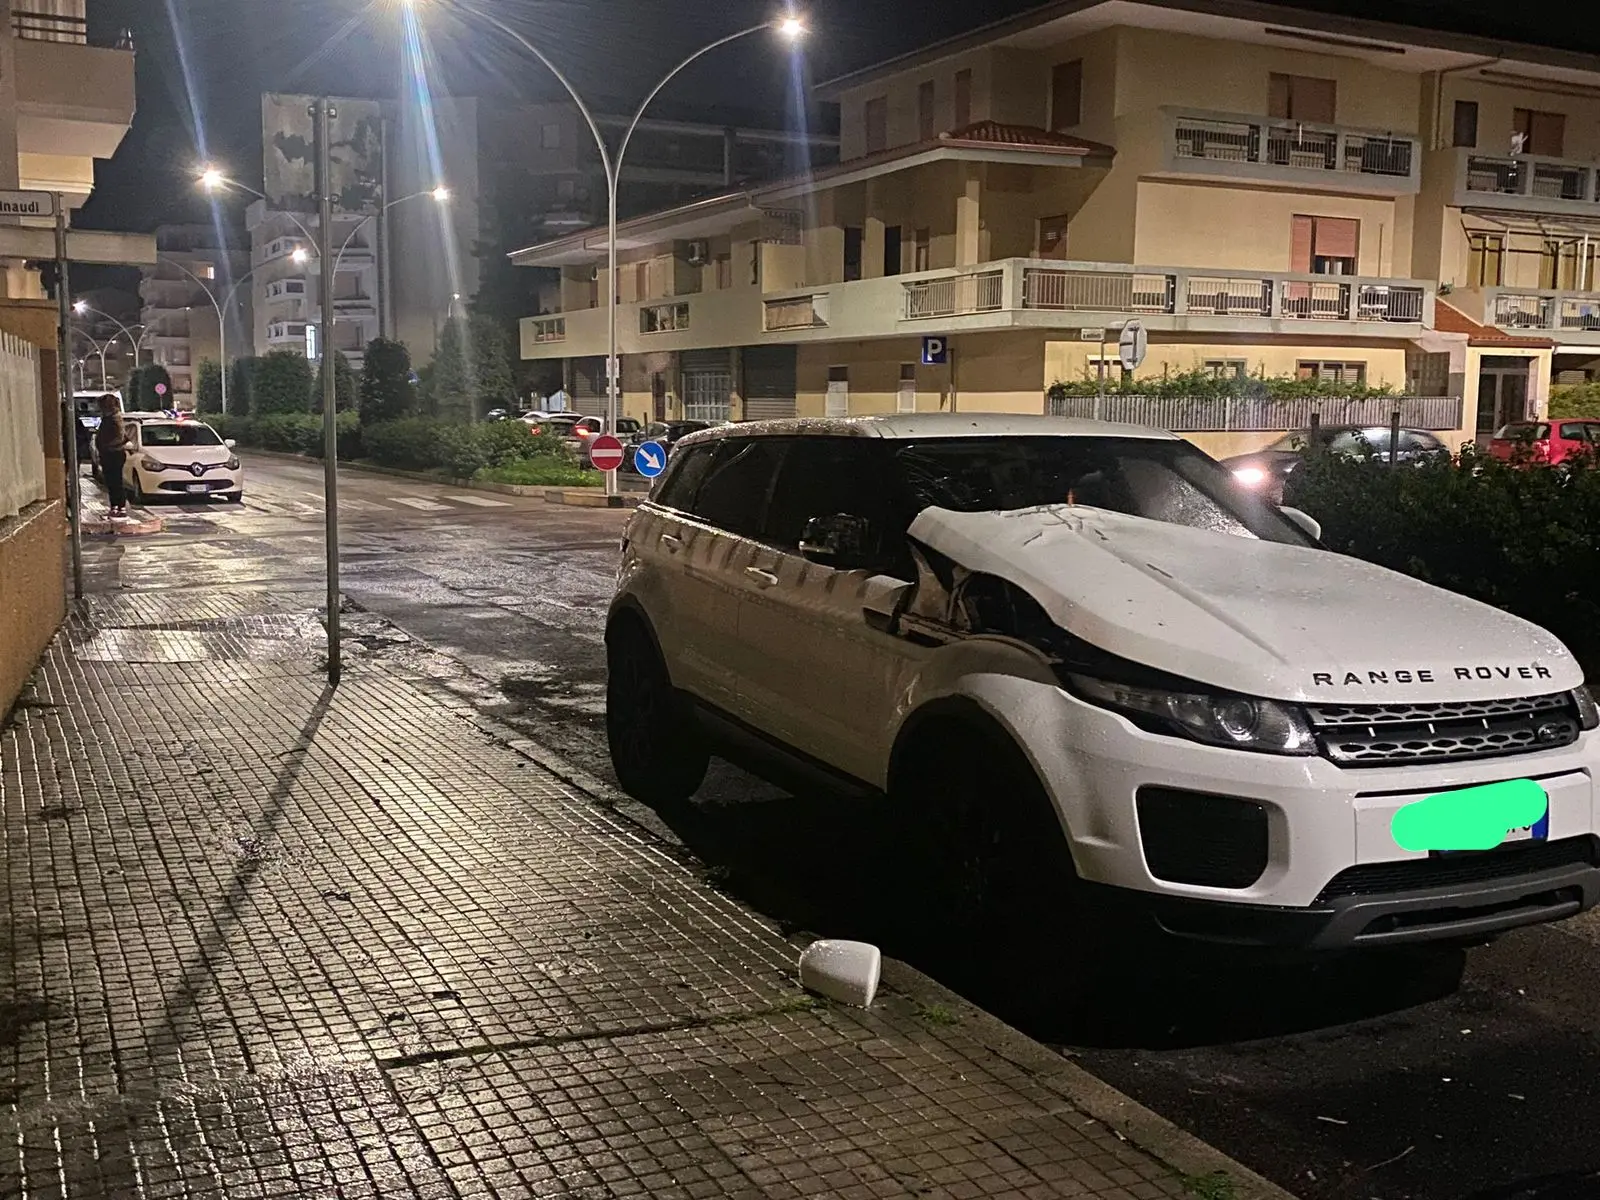 La Range Rover presa di mira dai vandali (foto Fiori)